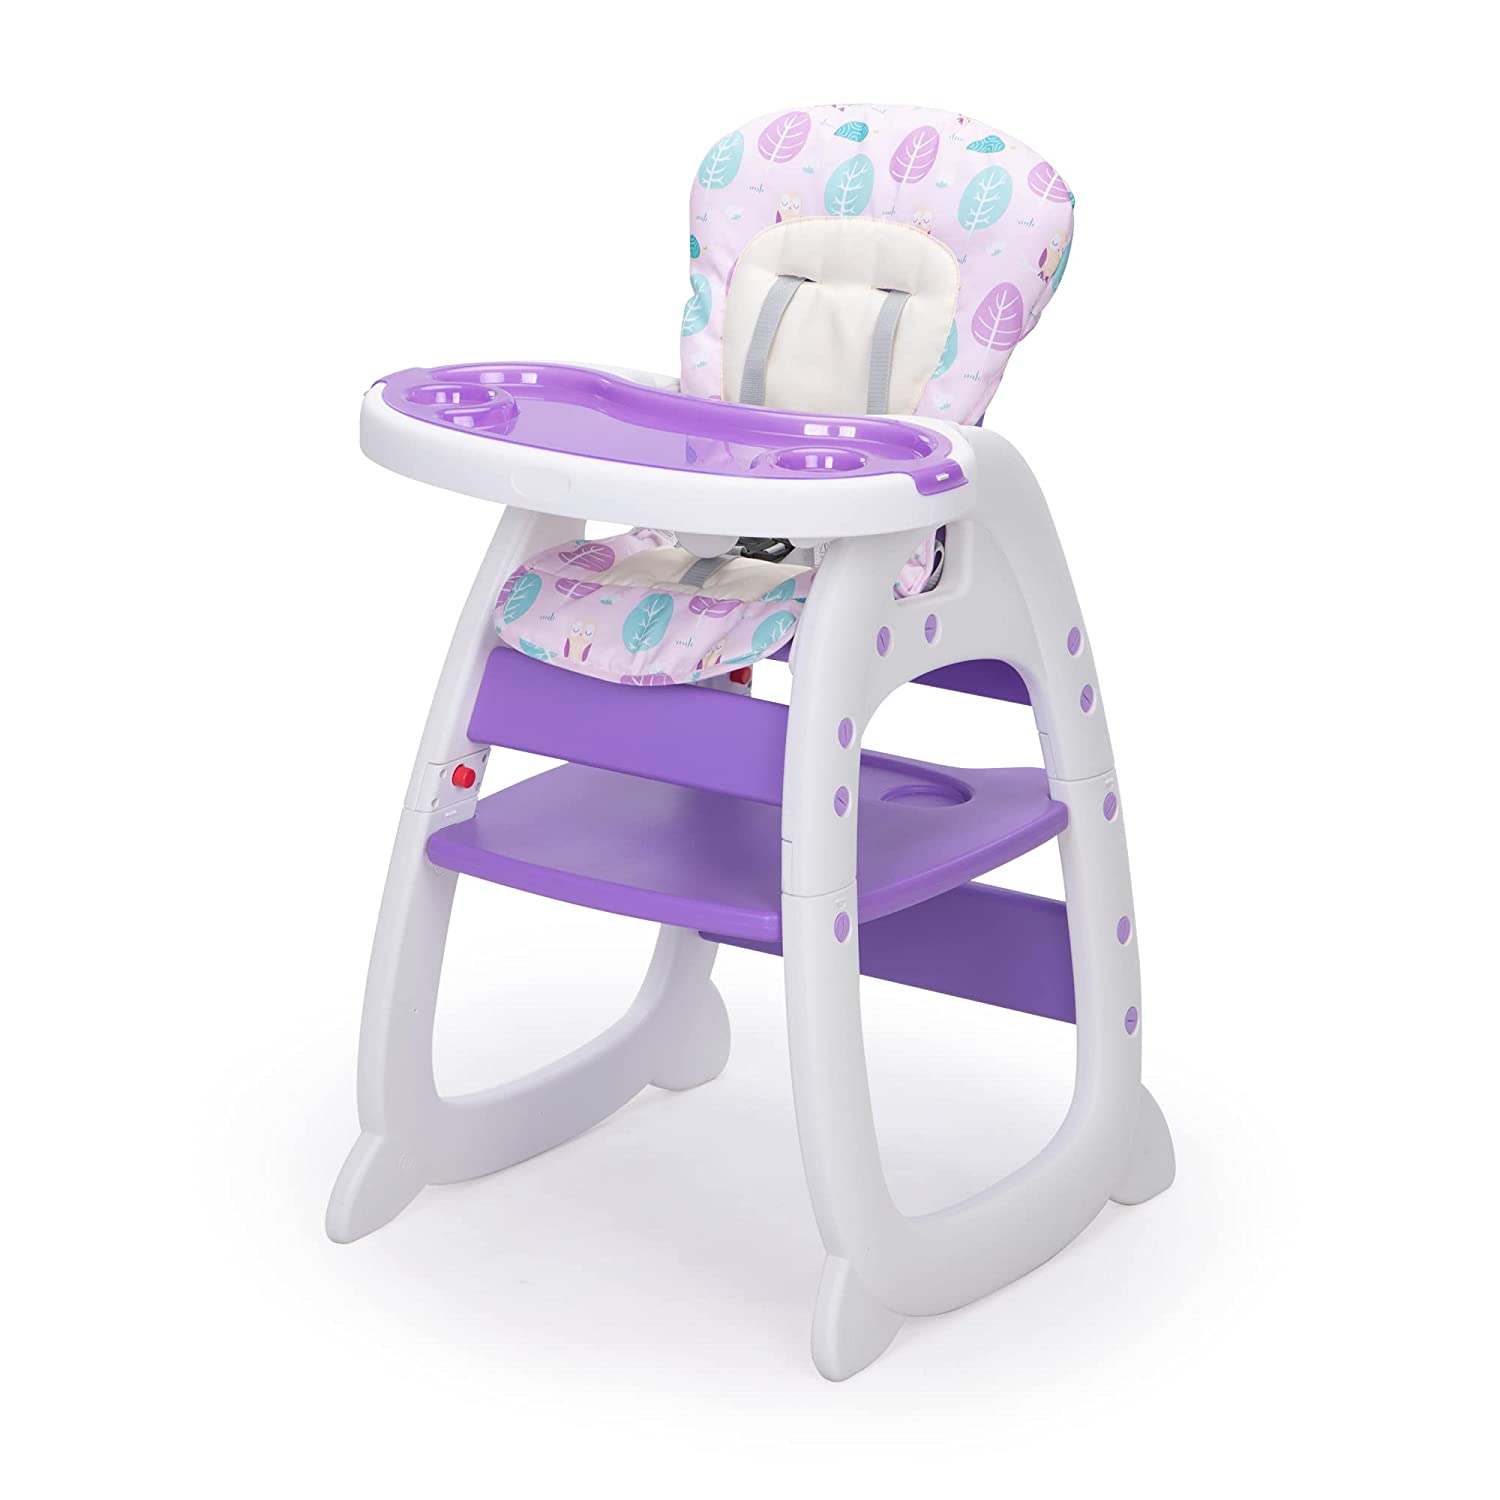 Детский стульчик для кормления 3 в 1 Sandinrayli, фиолетовый